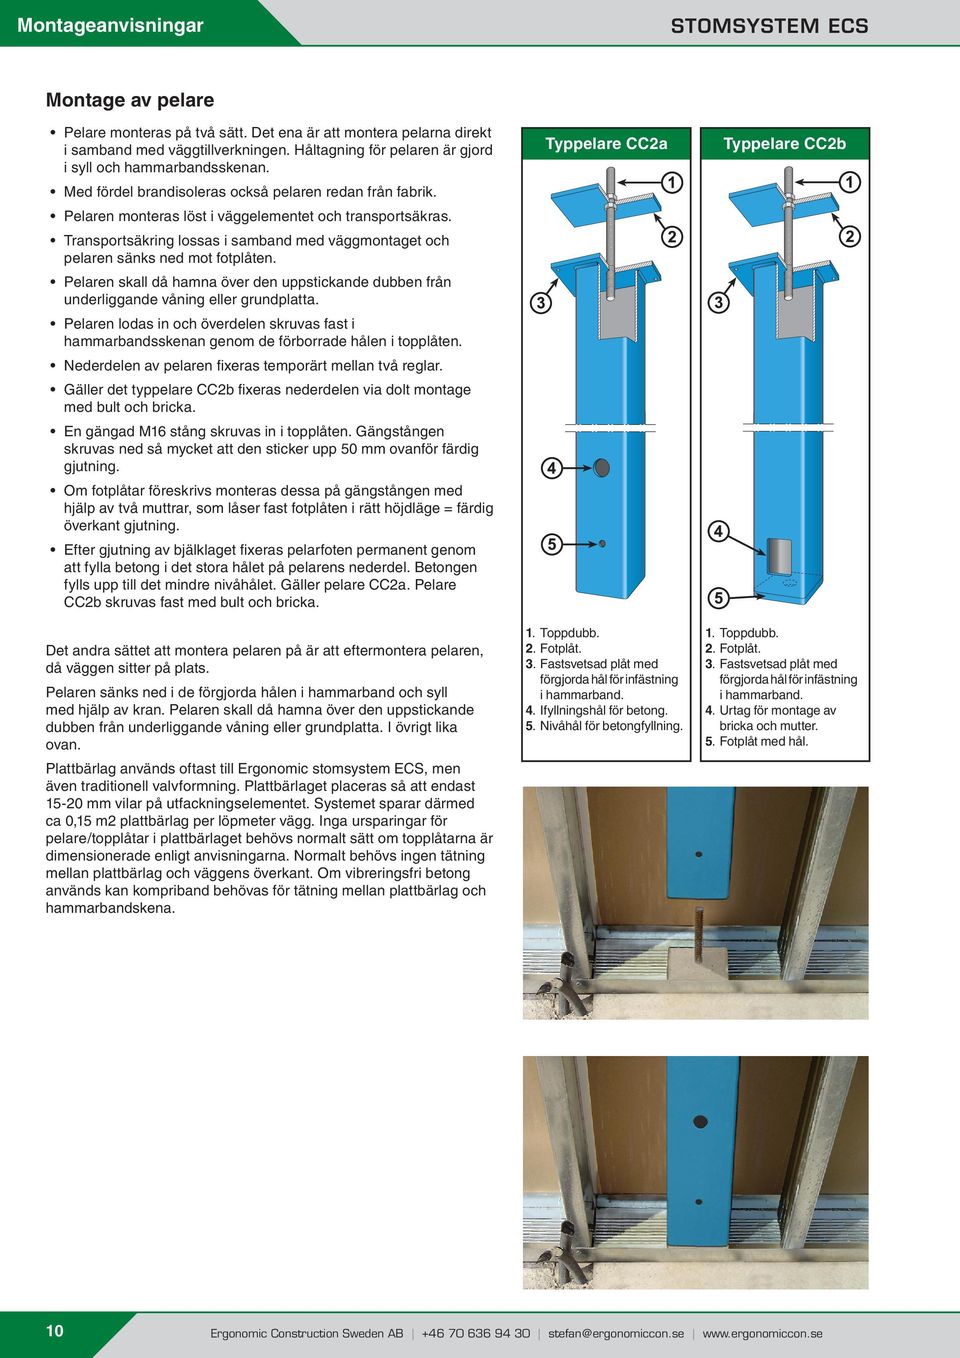 Transportsäkring lossas i samband med väggmontaget och pelaren sänks ned mot fotplåten. Pelaren skall då hamna över den uppstickande dubben från underliggande våning eller grundplatta.